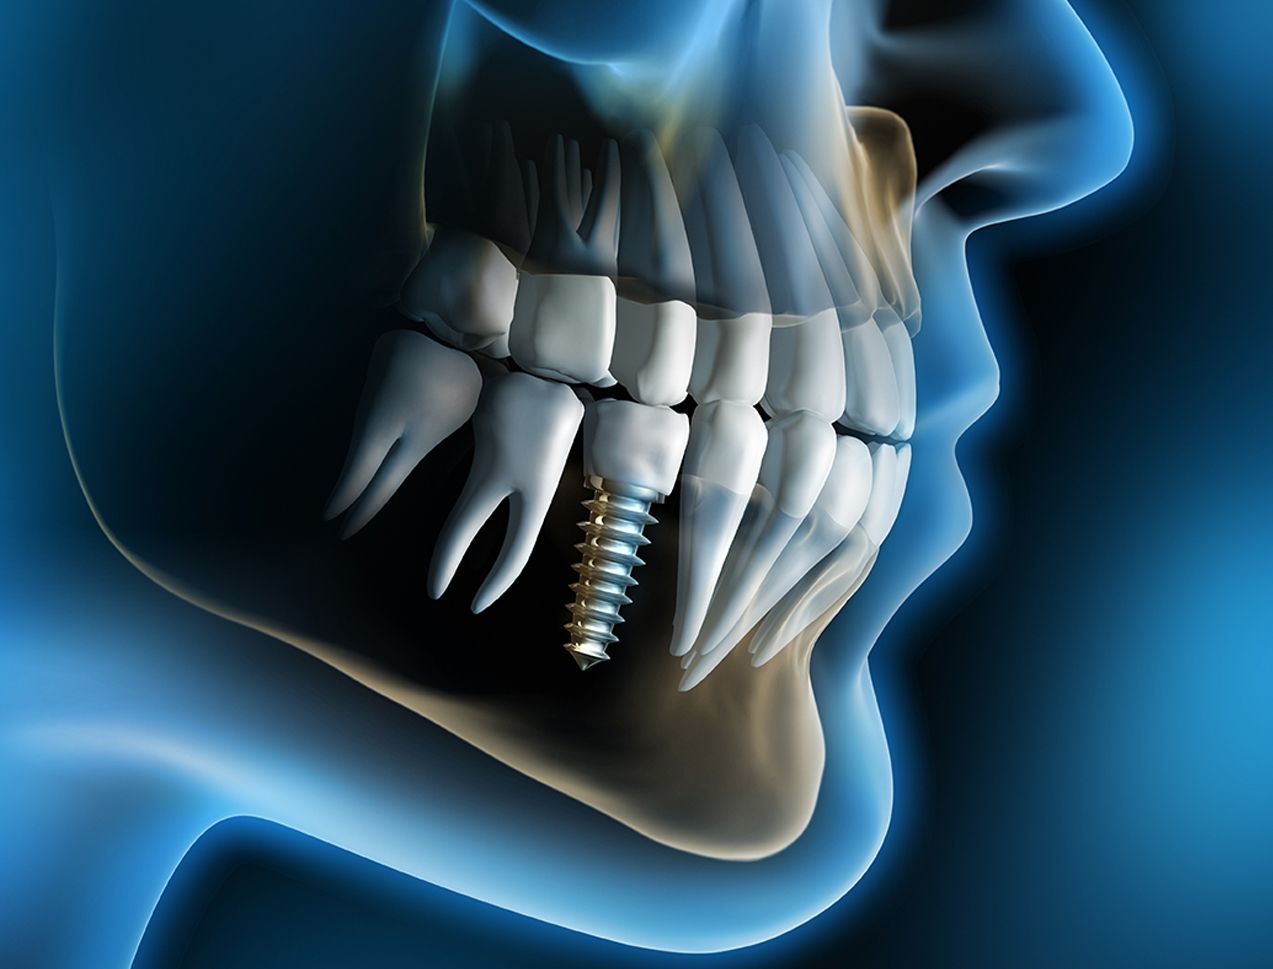 Dental Implants And Prosthetics .teahub.io